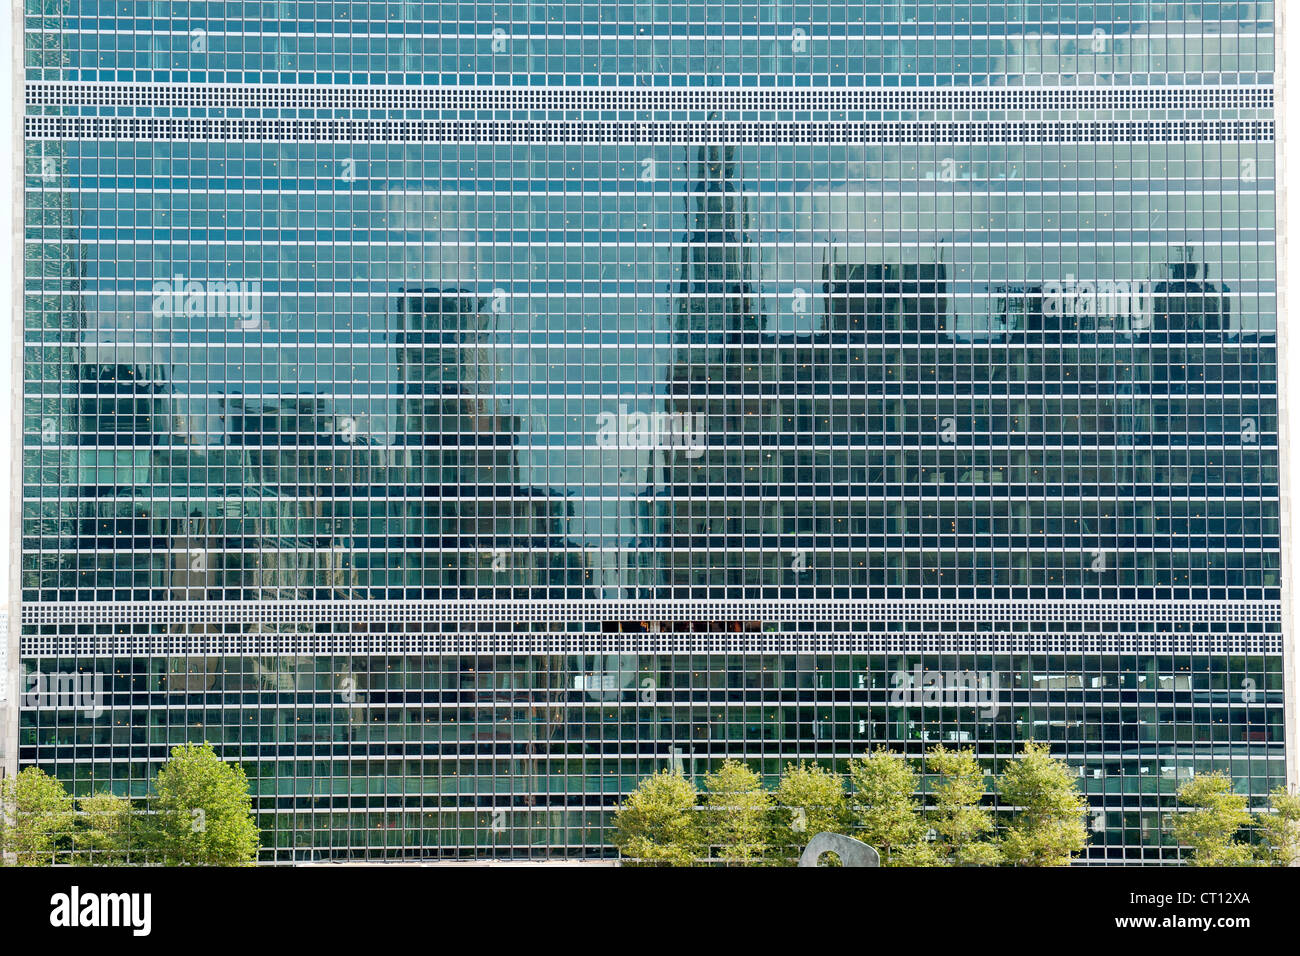 L'horizon de Manhattan reflétée dans les fenêtres de l'immeuble des Nations Unies à New York, USA. Banque D'Images